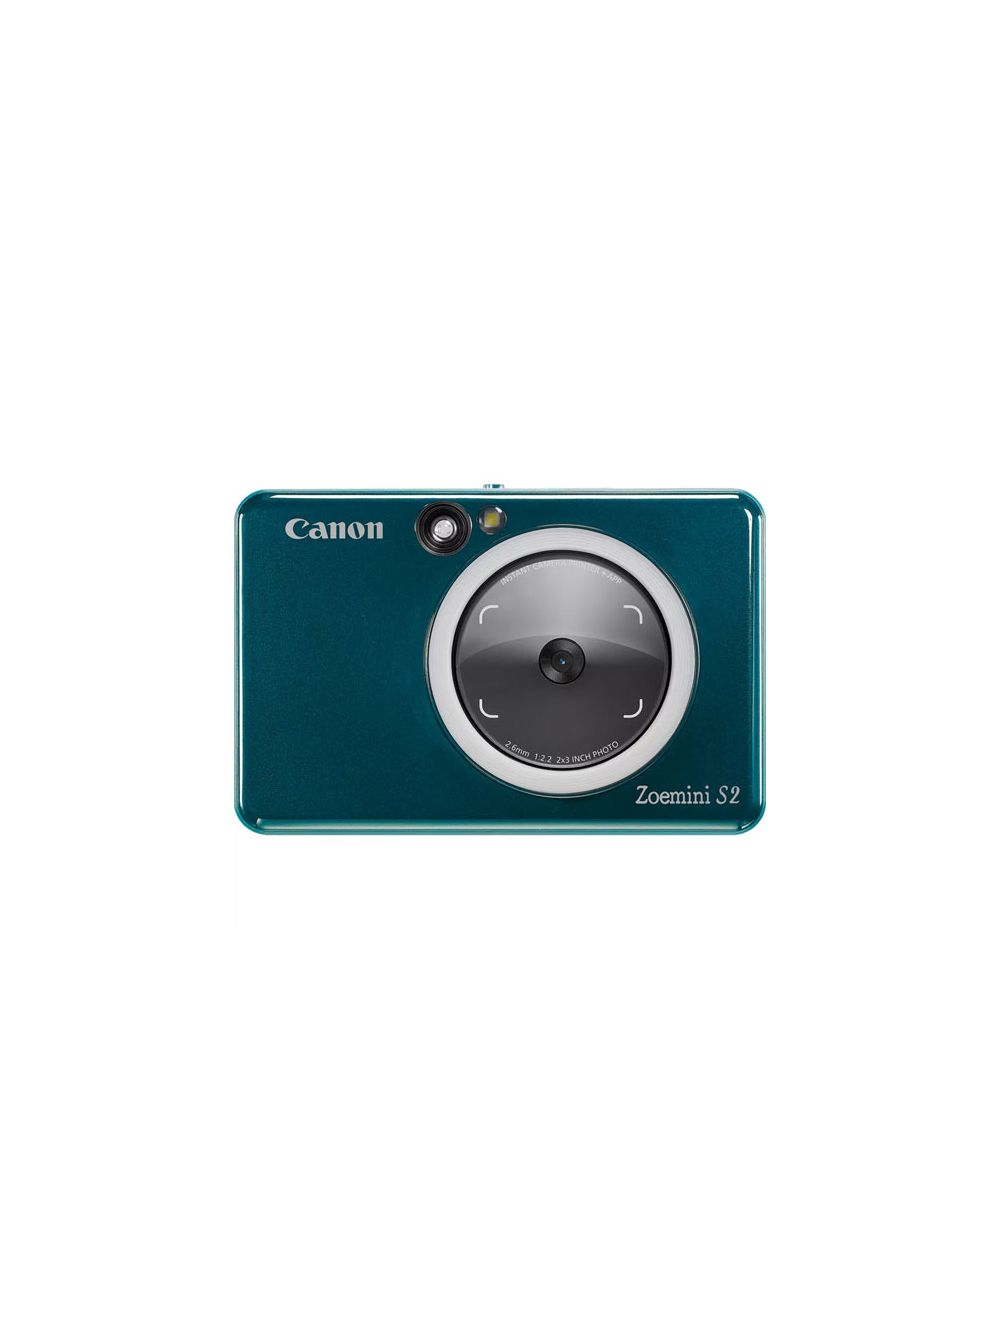 Canon Zoemini 2 - Live big, print mini 